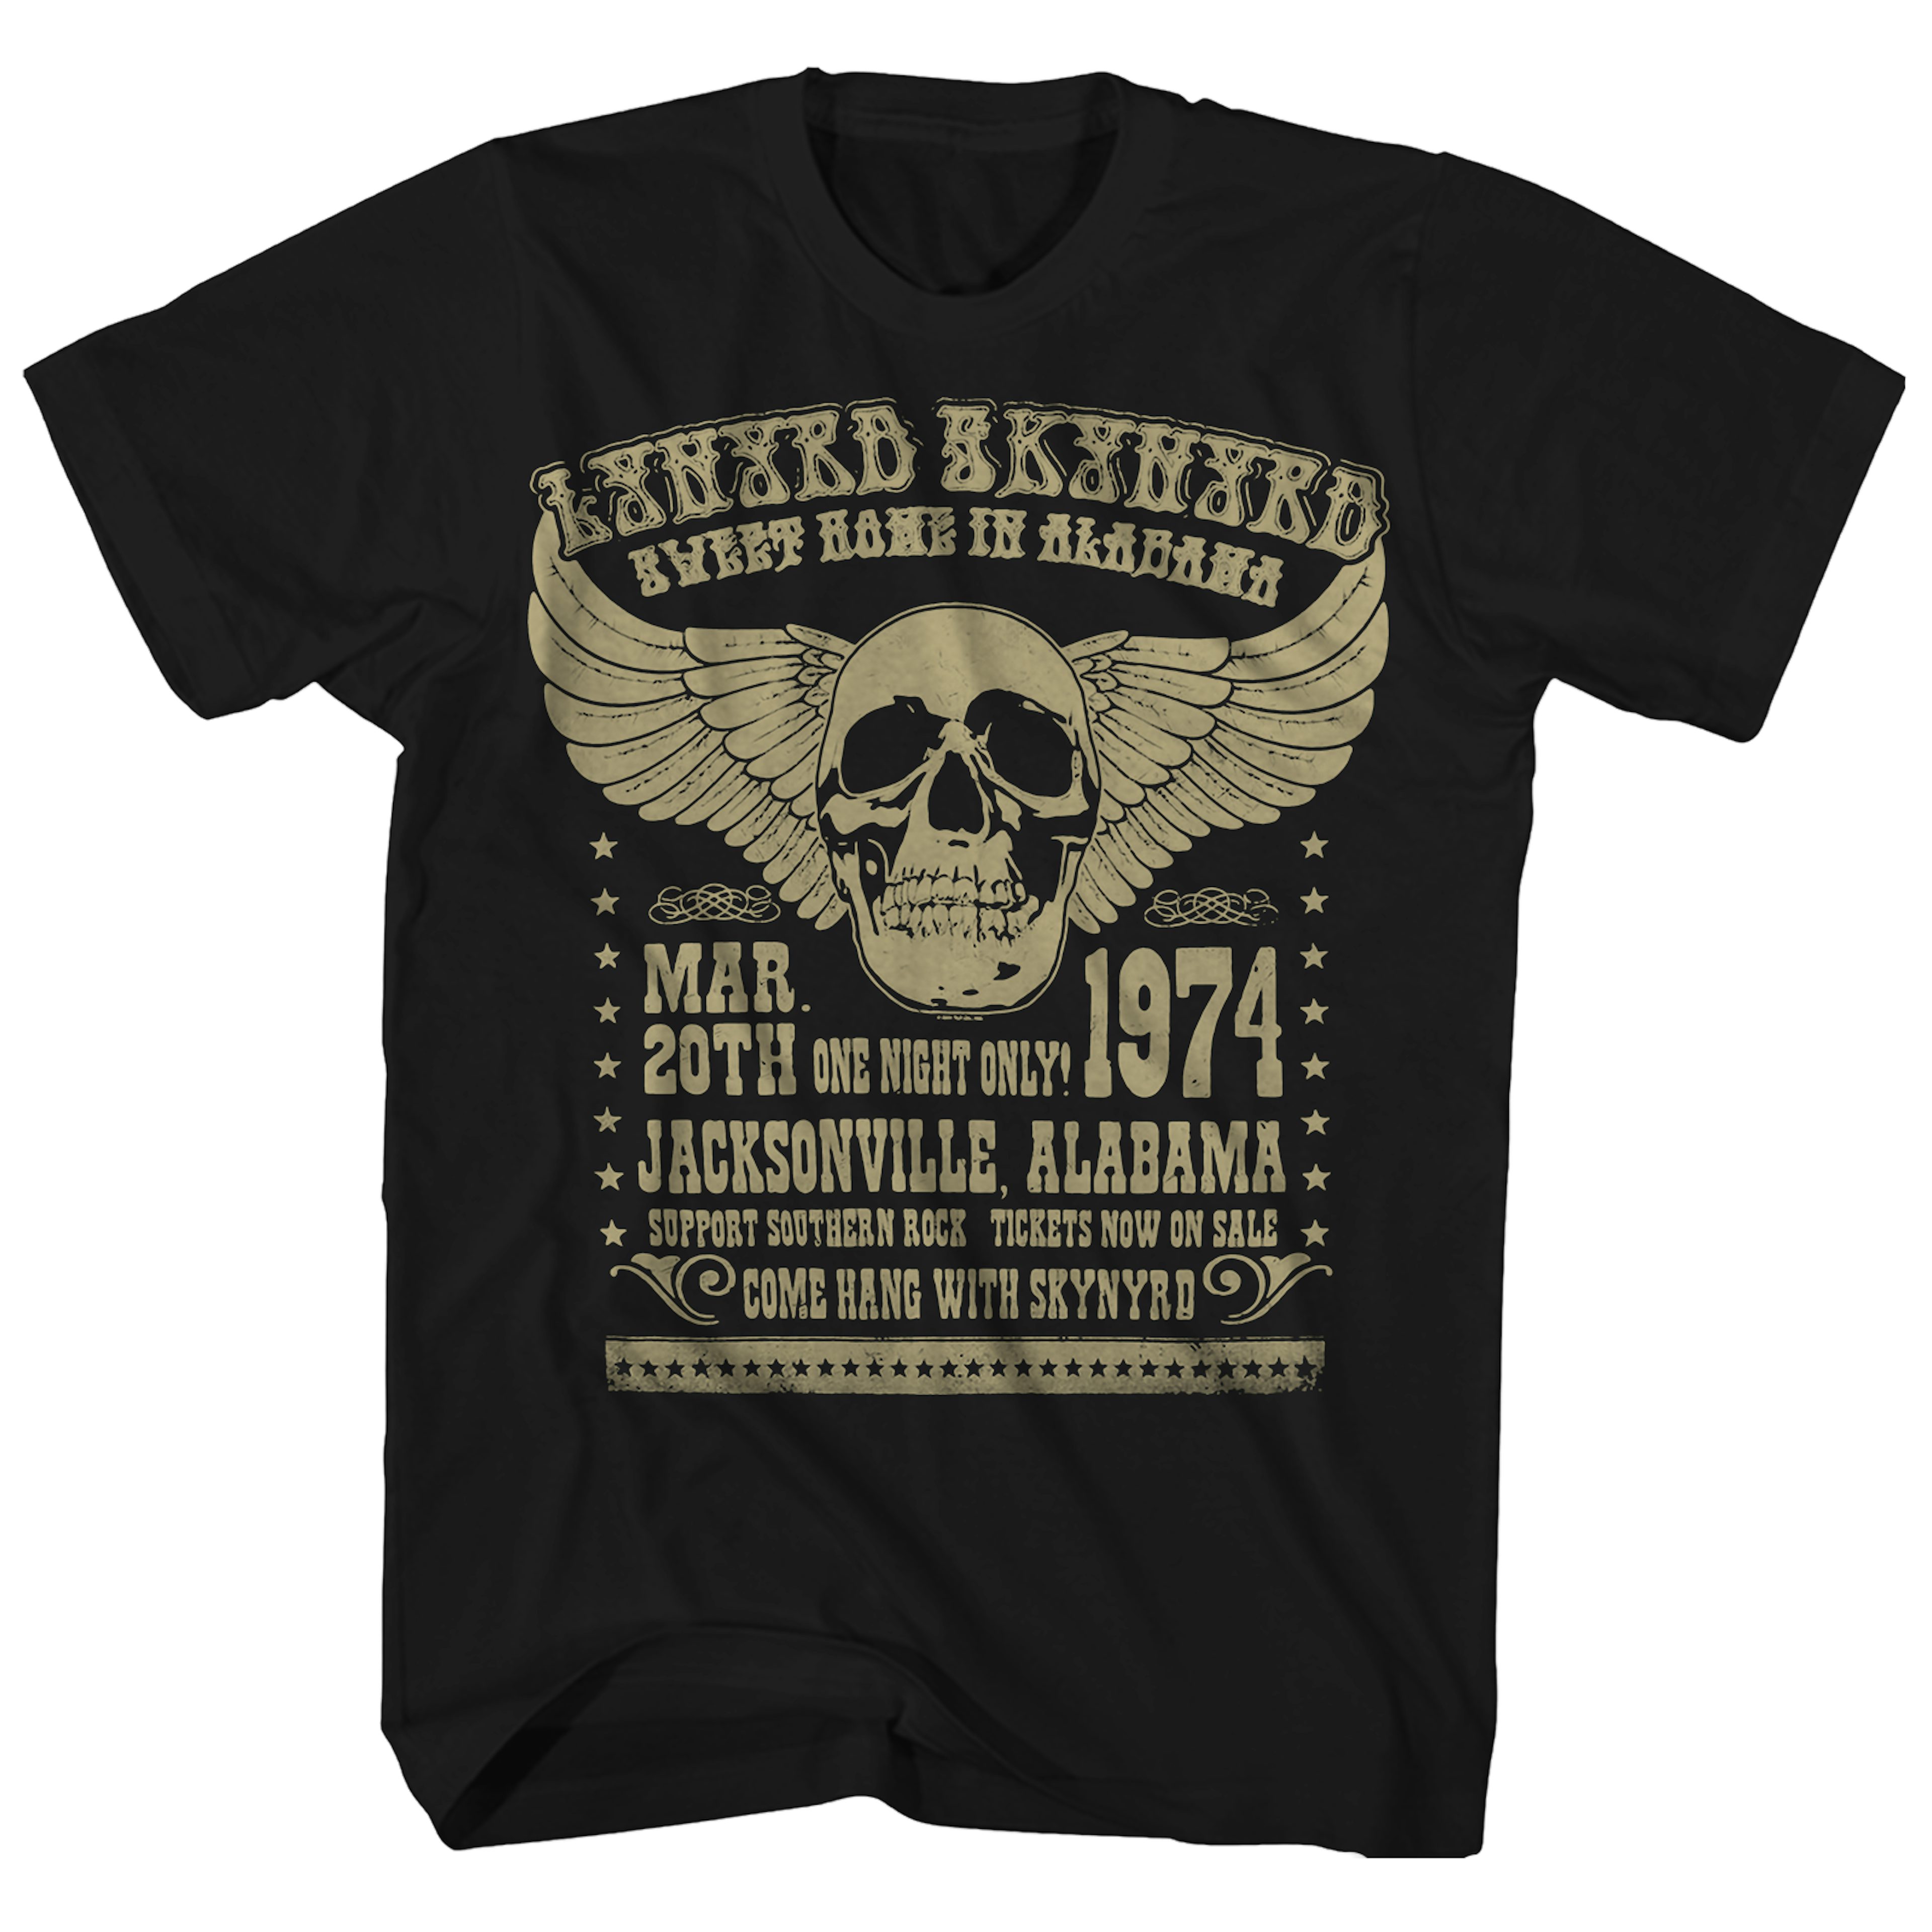 Geef energie Op de loer liggen boezem Lynyrd Skynyrd T-Shirt | '74 Alabama Concert Lynyrd Skynyrd Shirt (Reissue)